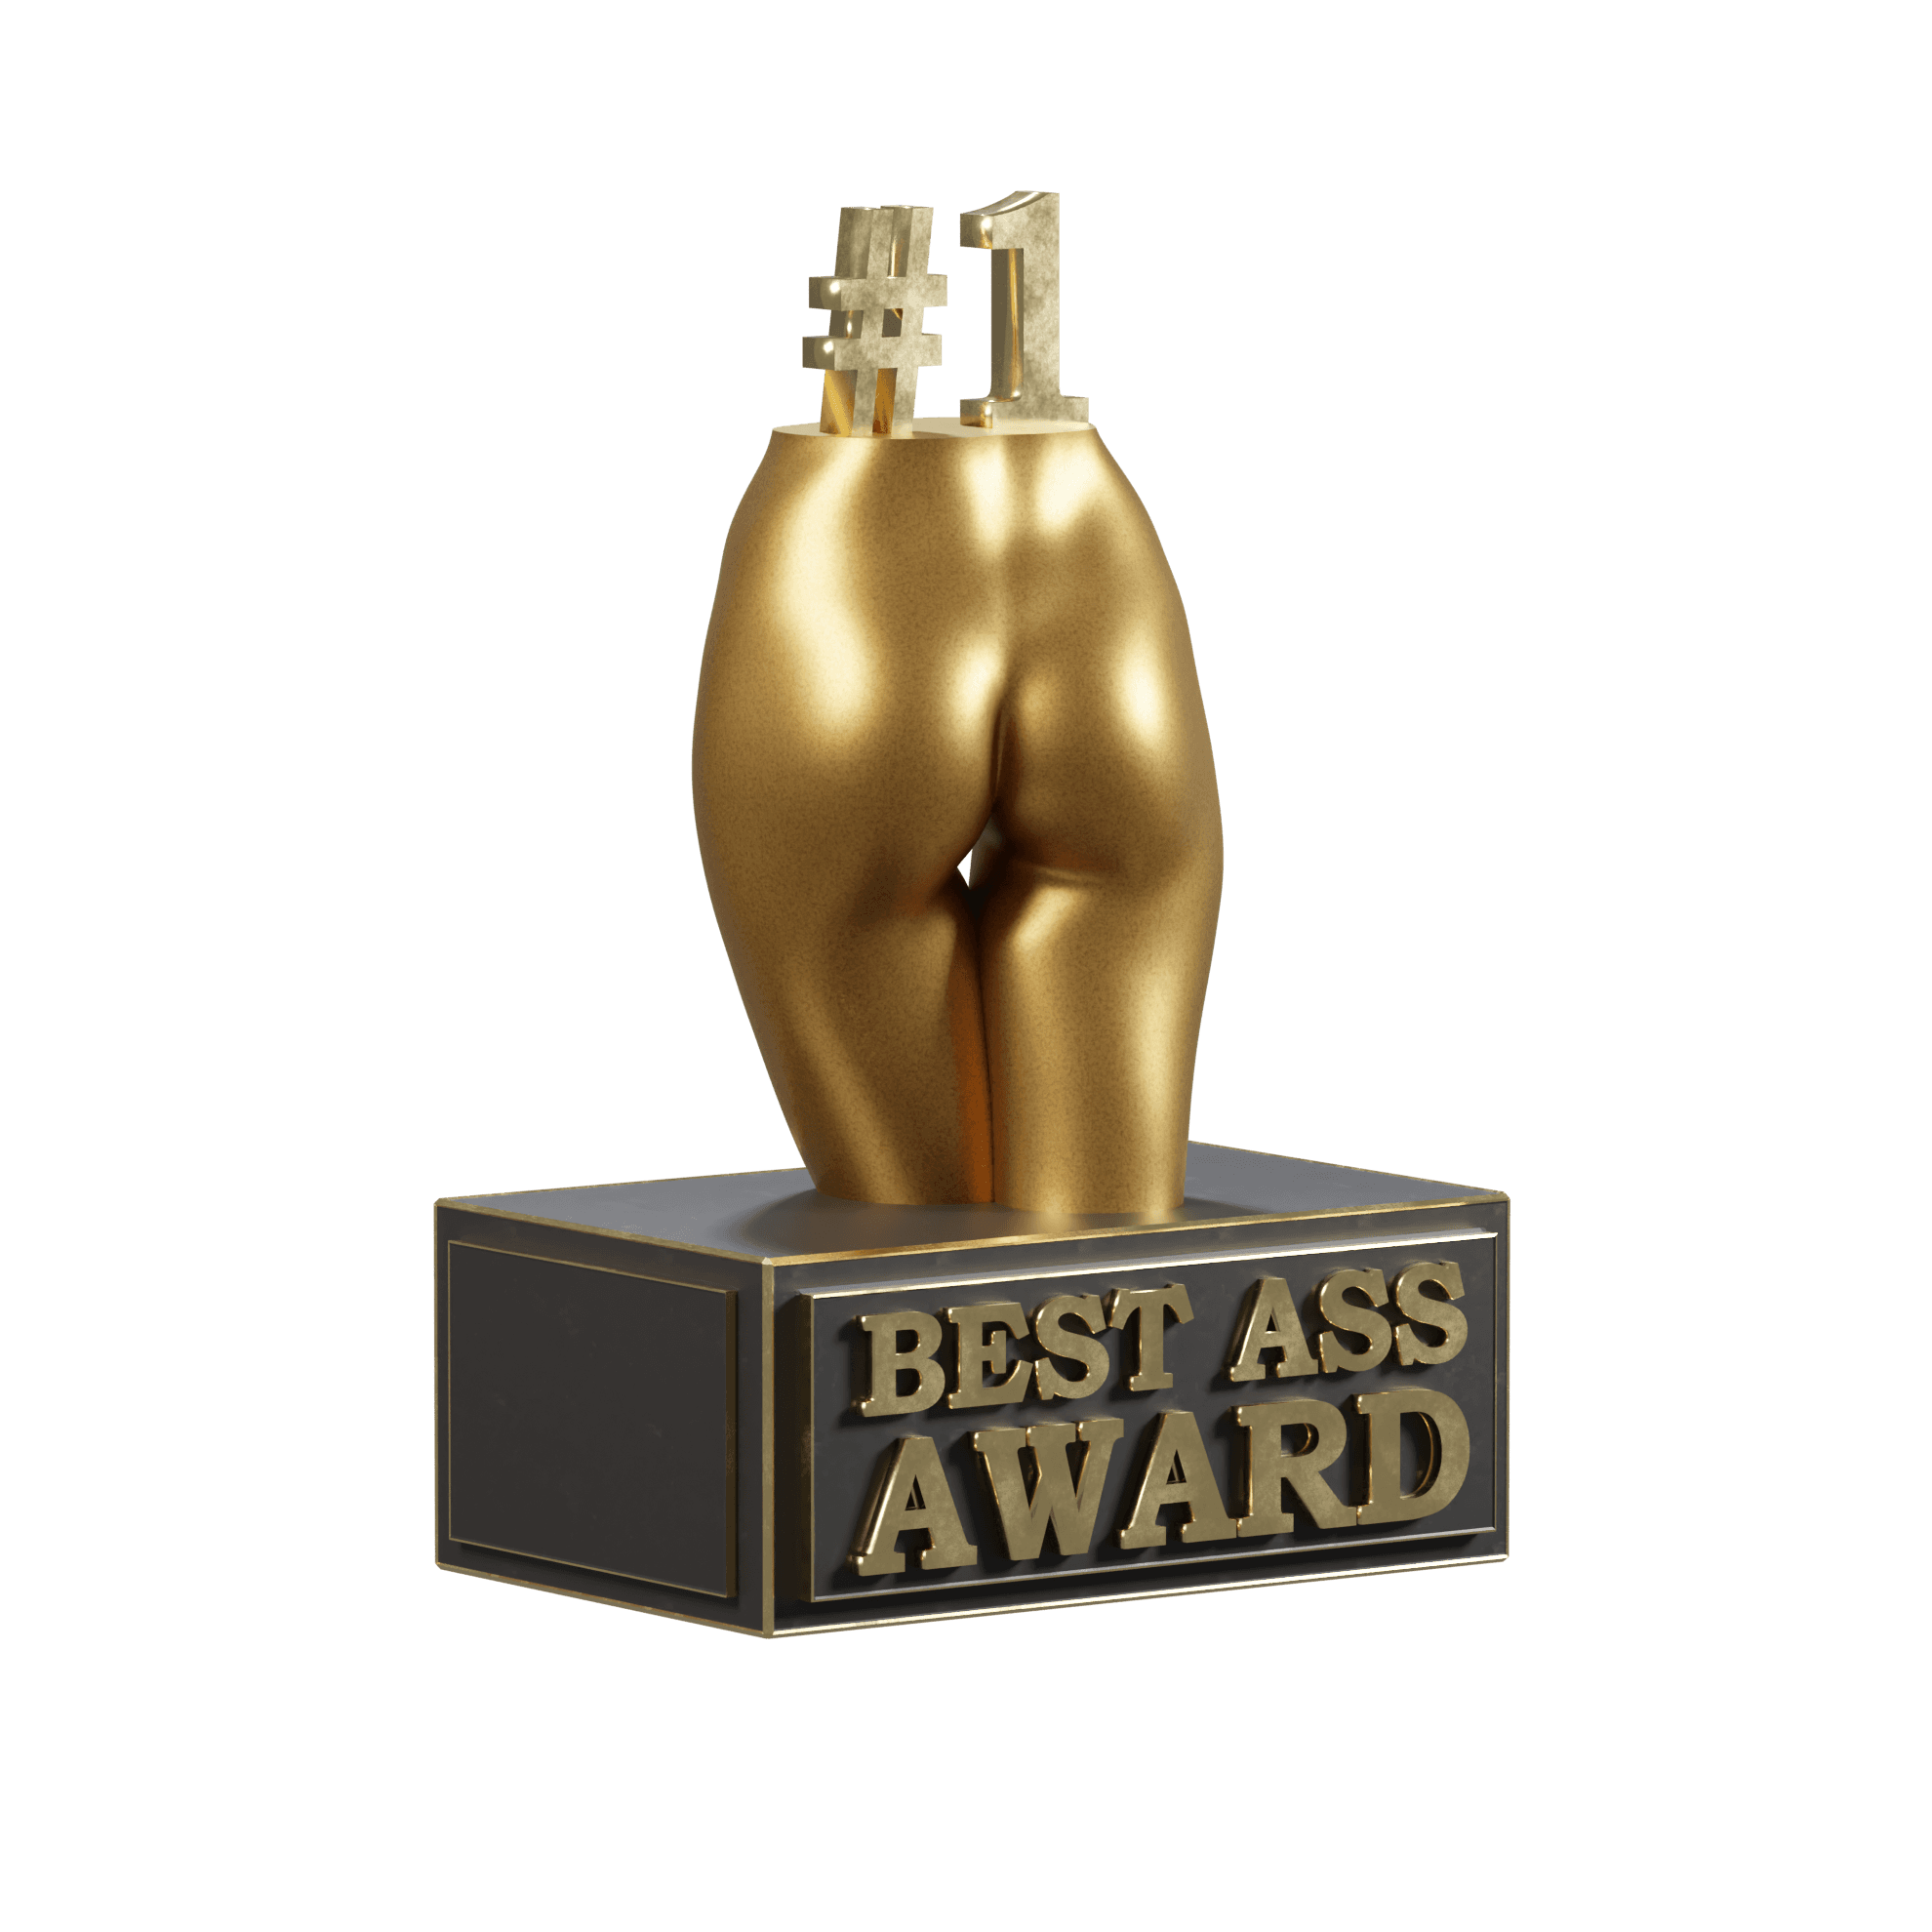 Best Ass Award 3d model